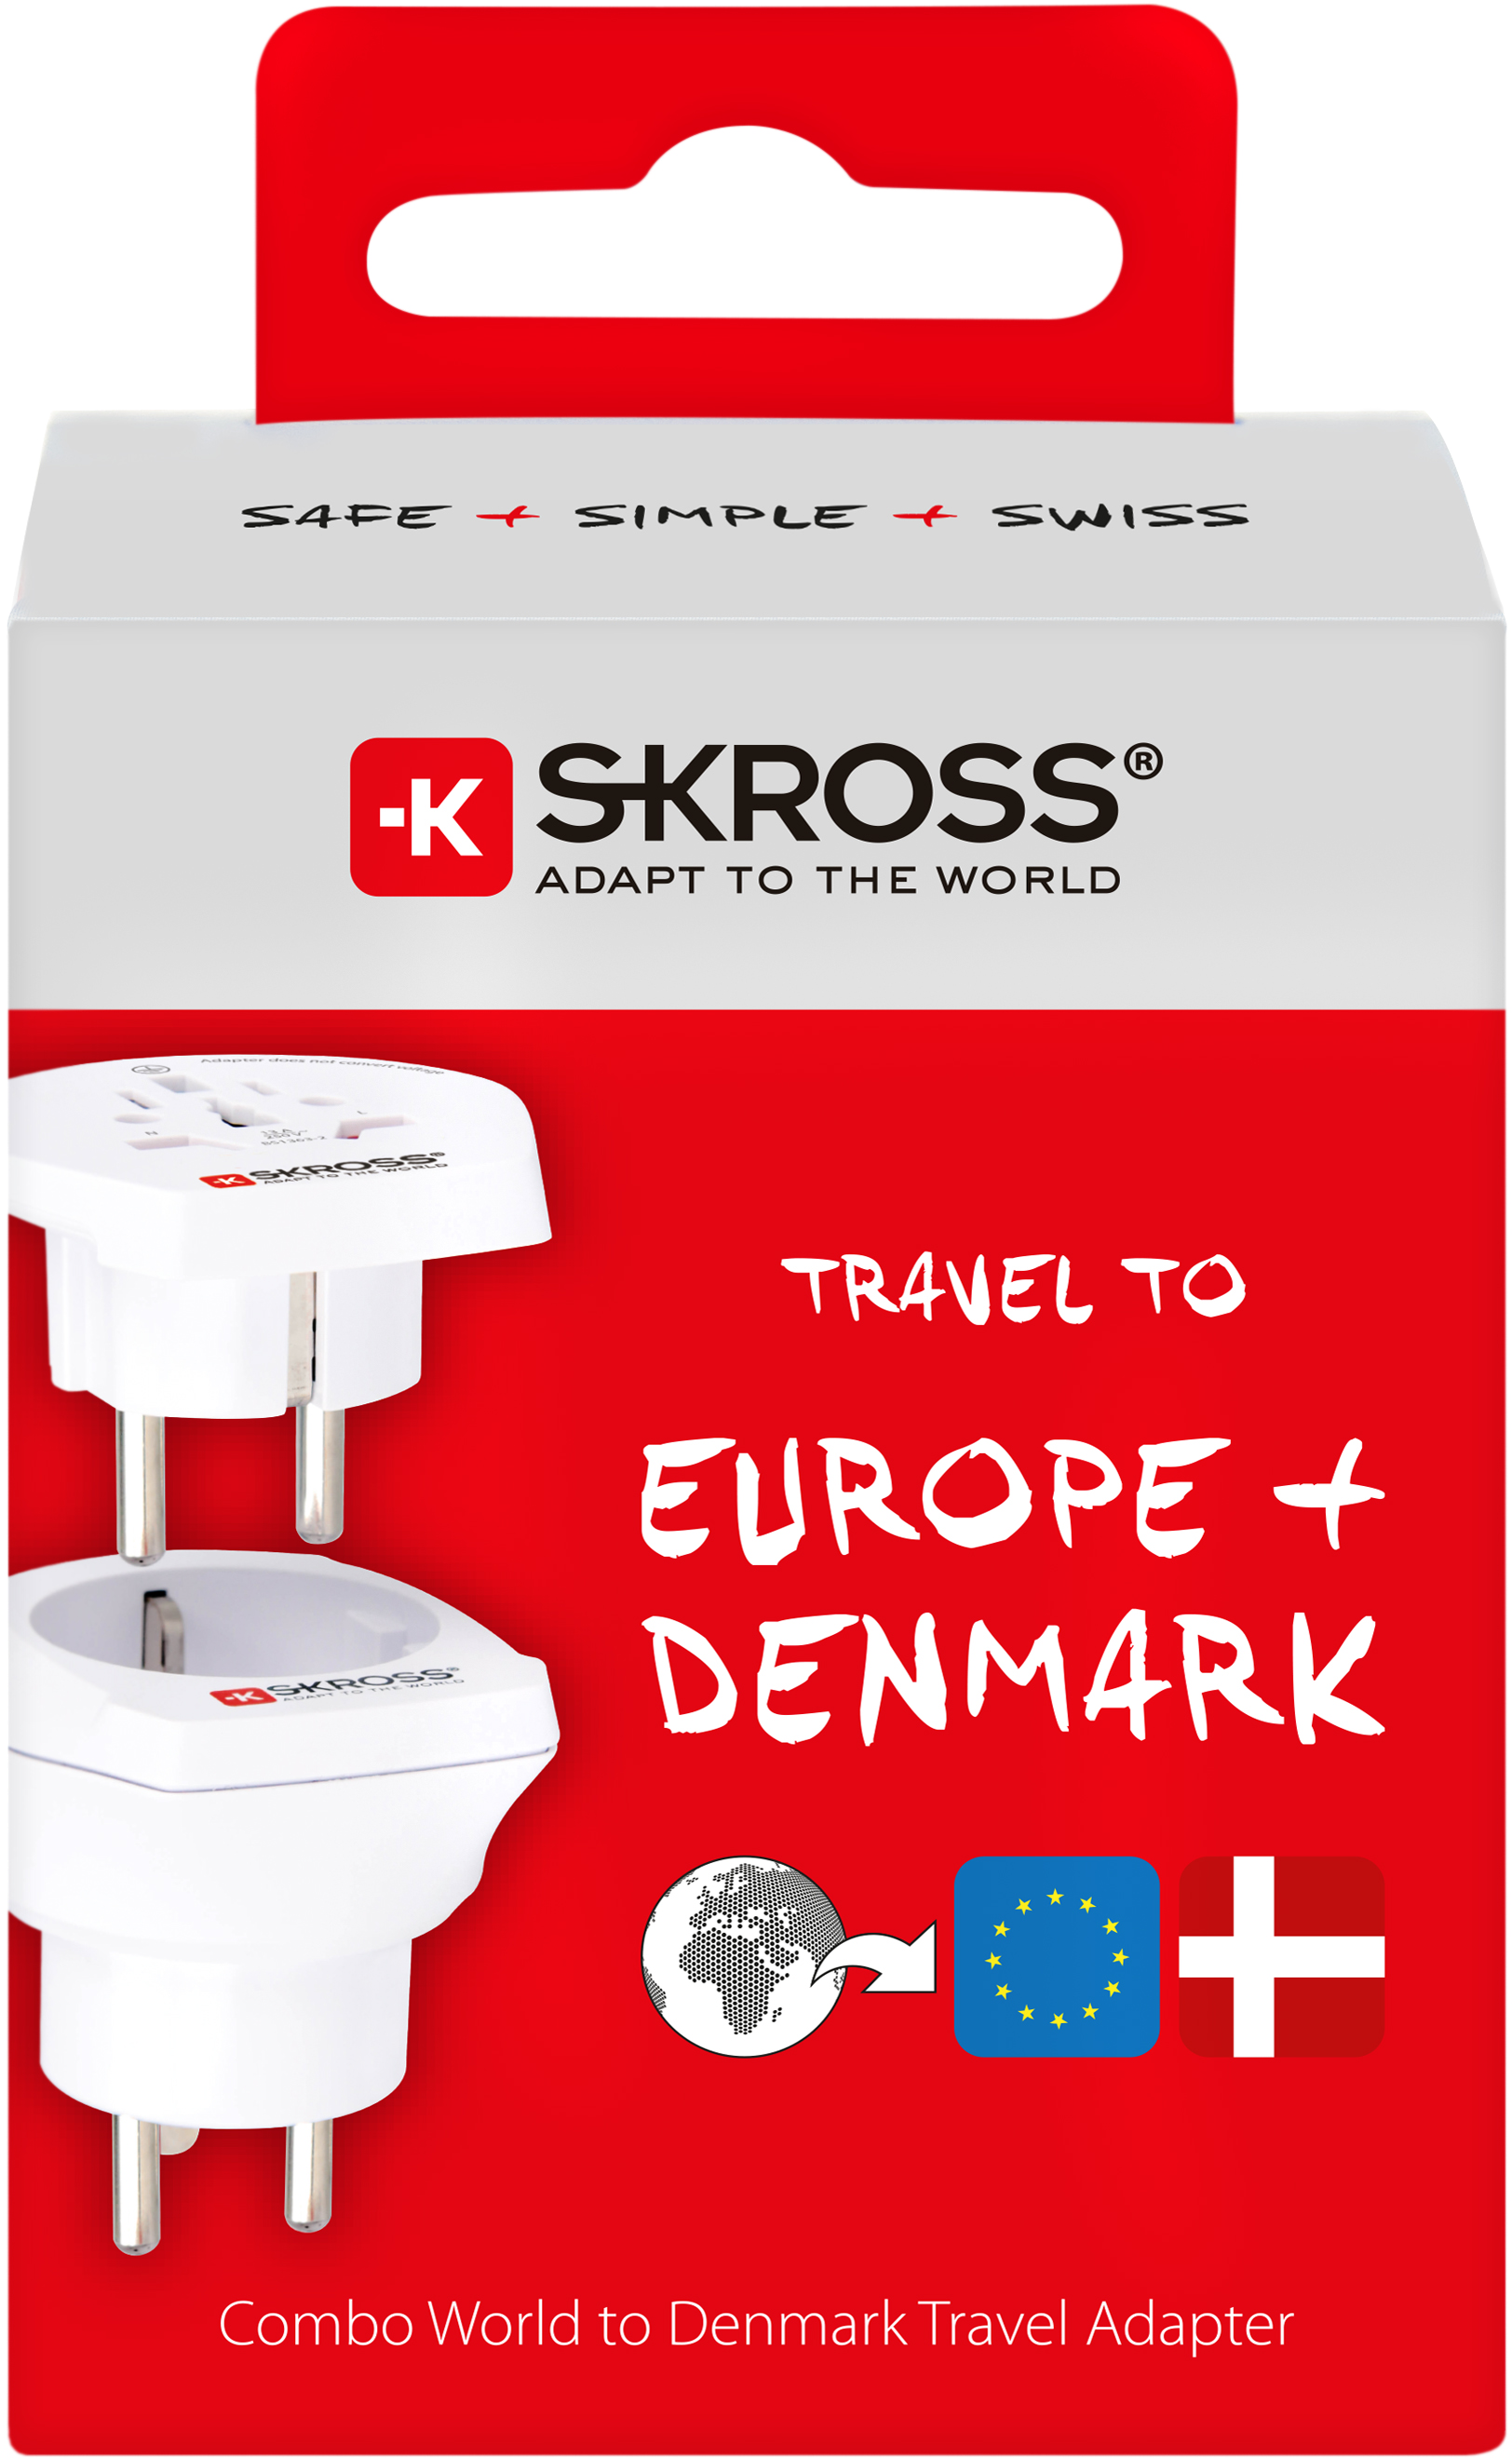 Skross 3-Pole Combo World to Denmark Travel Adapter Packaging